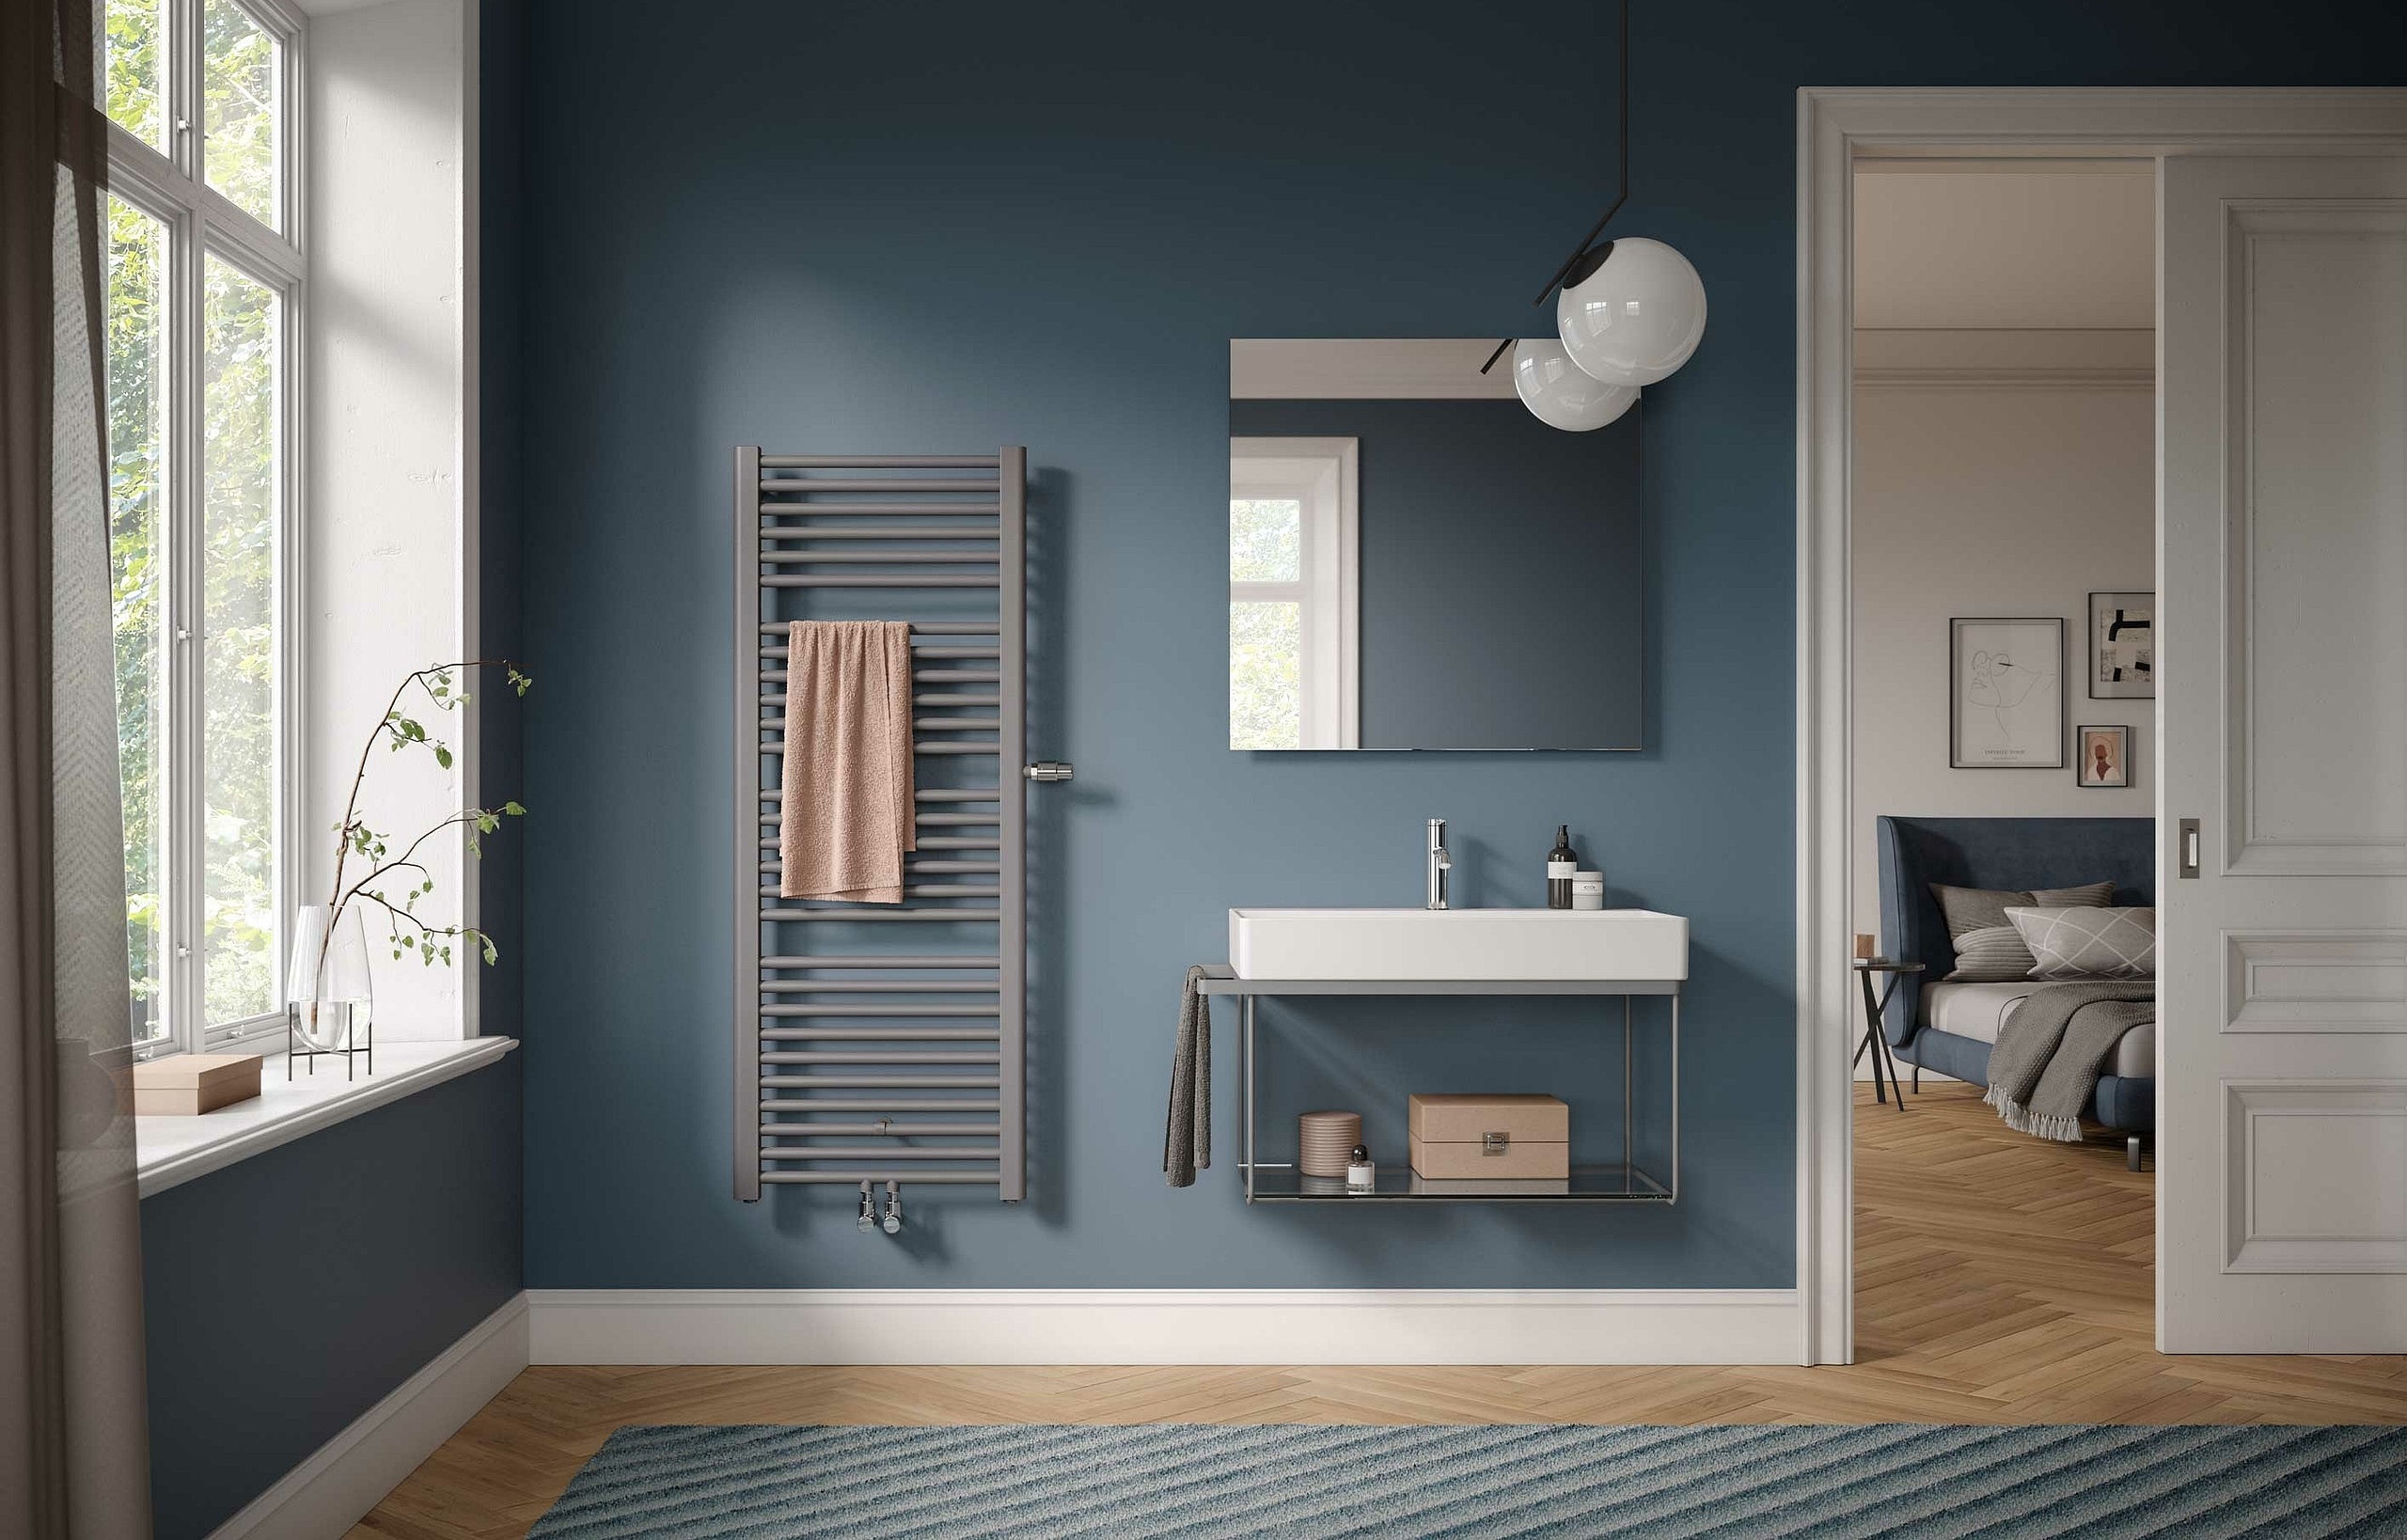 Kermi Basic plus design and bathroom radiators – classic design. Easy to operate.